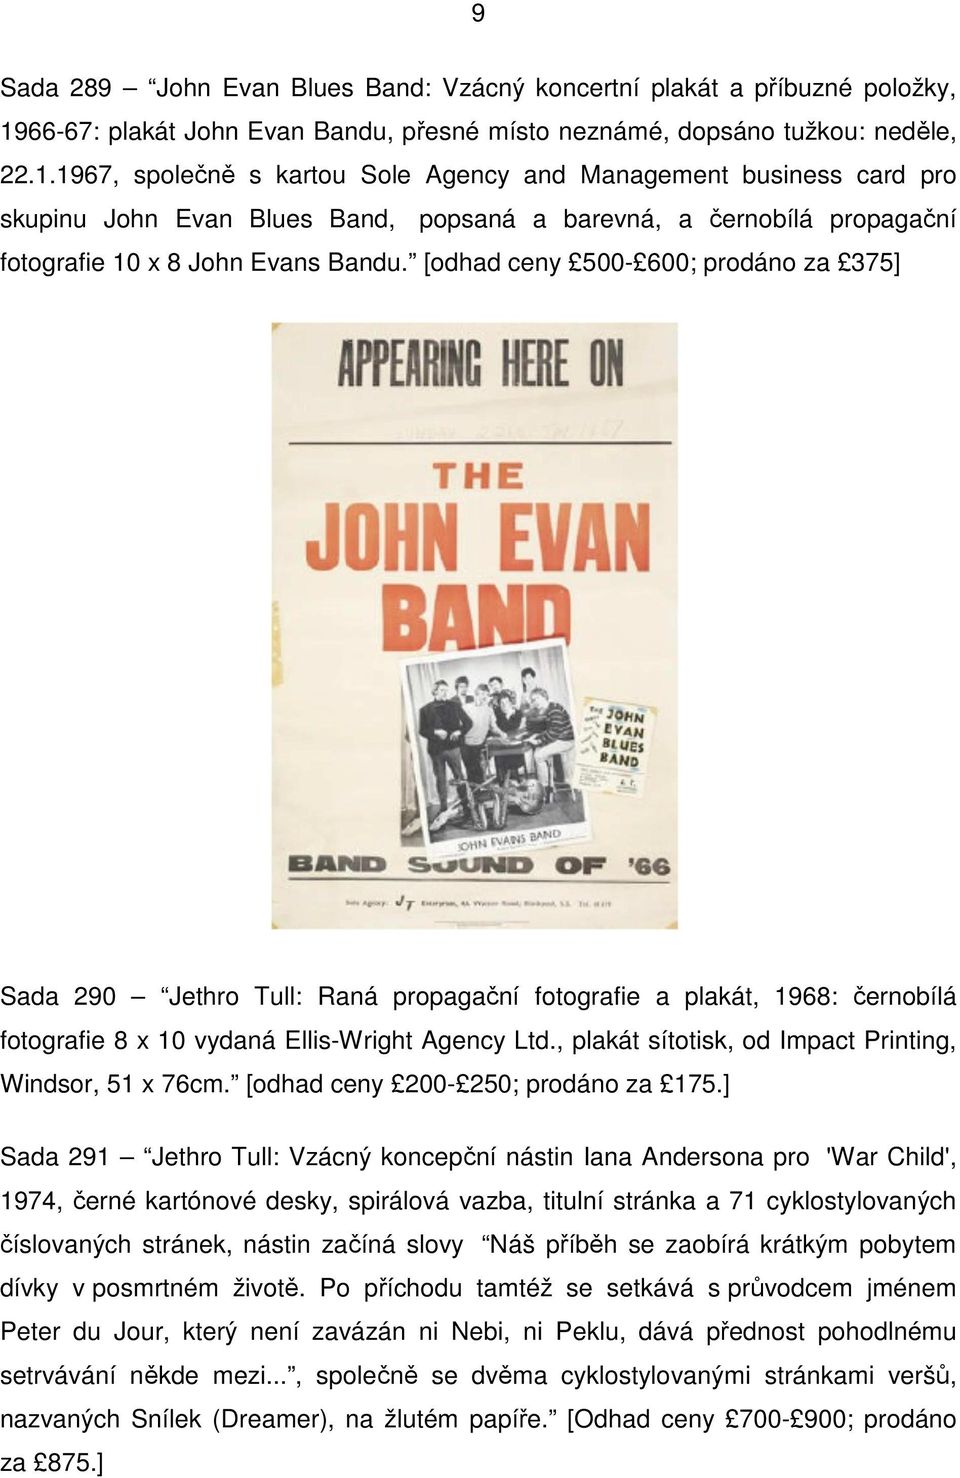 1967, společně s kartou Sole Agency and Management business card pro skupinu John Evan Blues Band, popsaná a barevná, a černobílá propagační fotografie 10 x 8 John Evans Bandu.